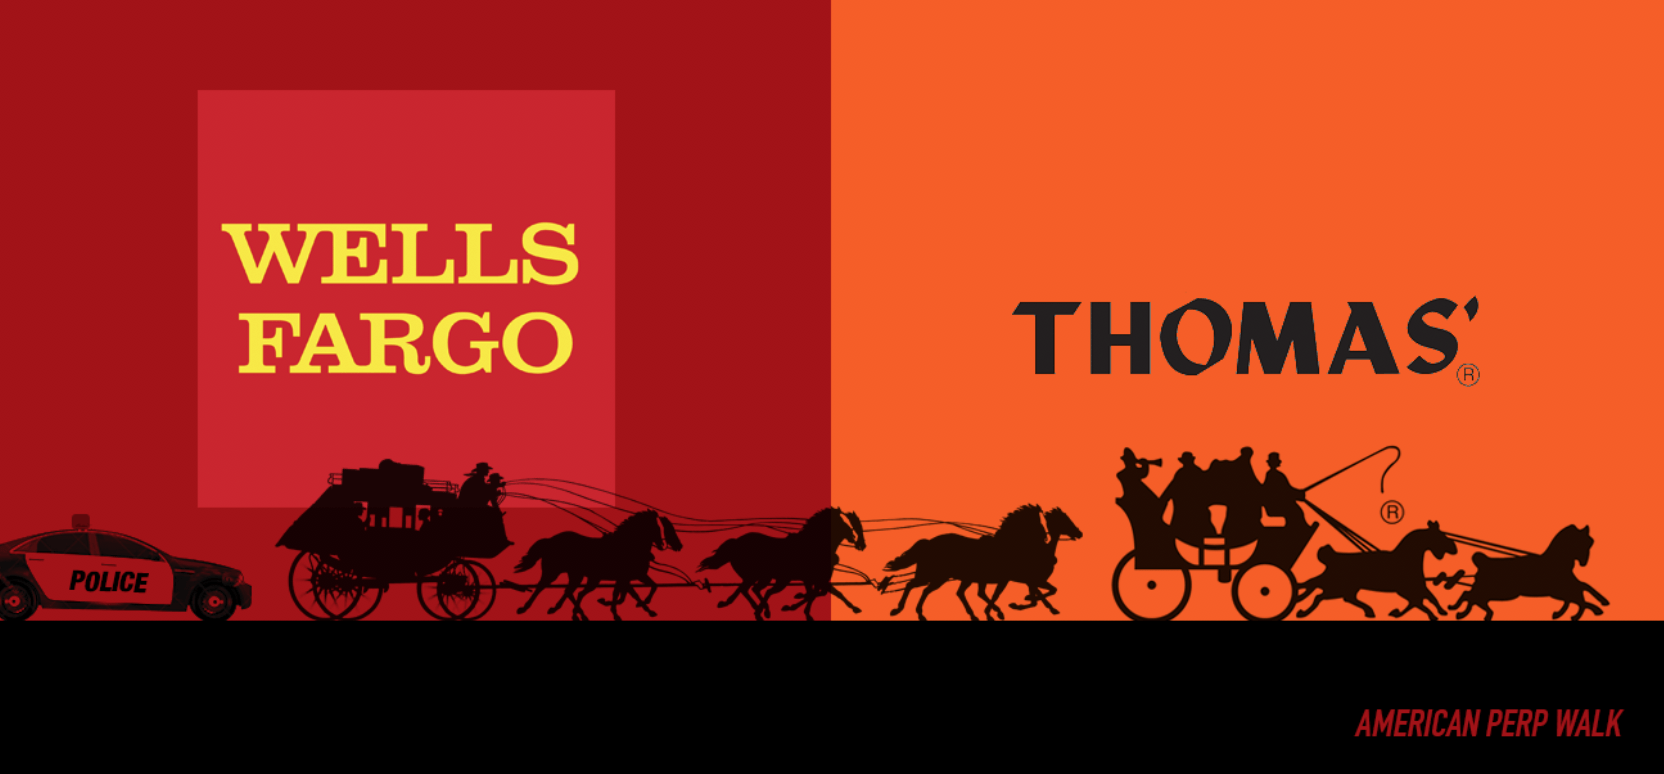 Wells Fargo Logo - Fleeing Police, Wells Fargo Stagecoach Rear-Ends Thomas' English ...